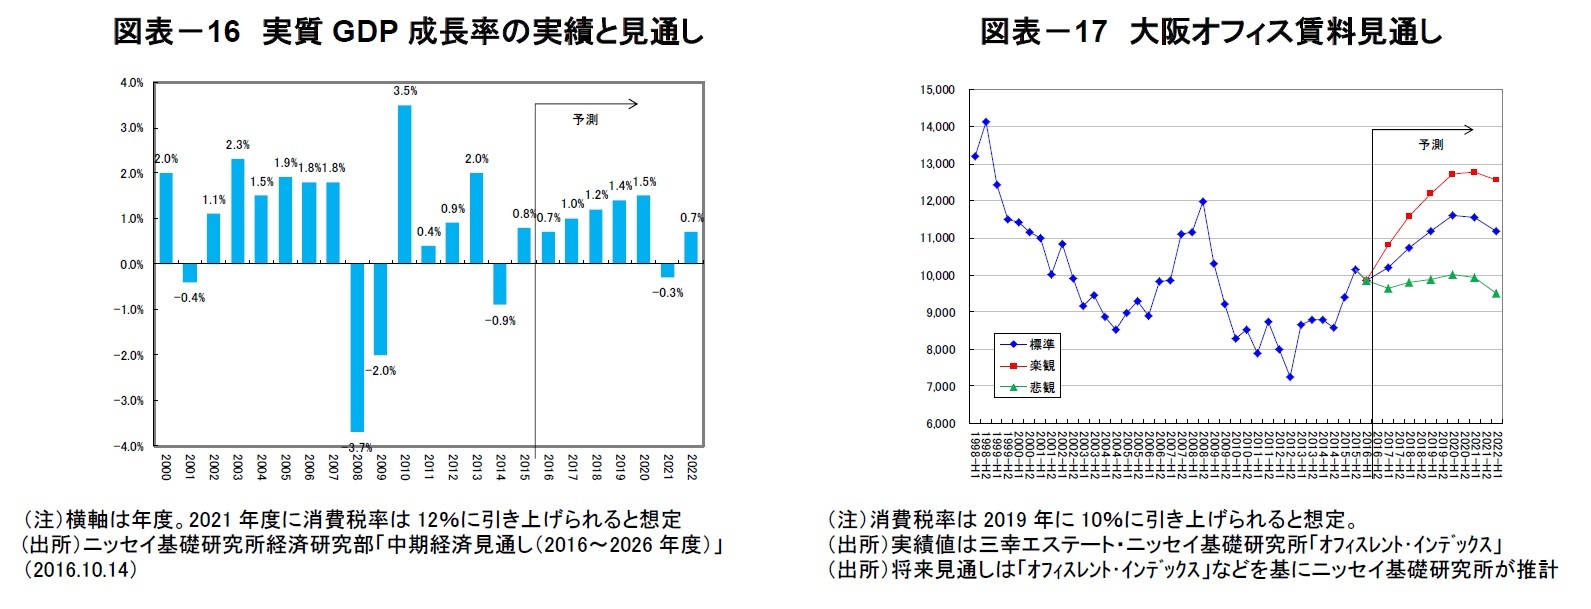 図表－16　実質GDP成長率の実績と見通し/図表－17　大阪オフィス賃料見通し